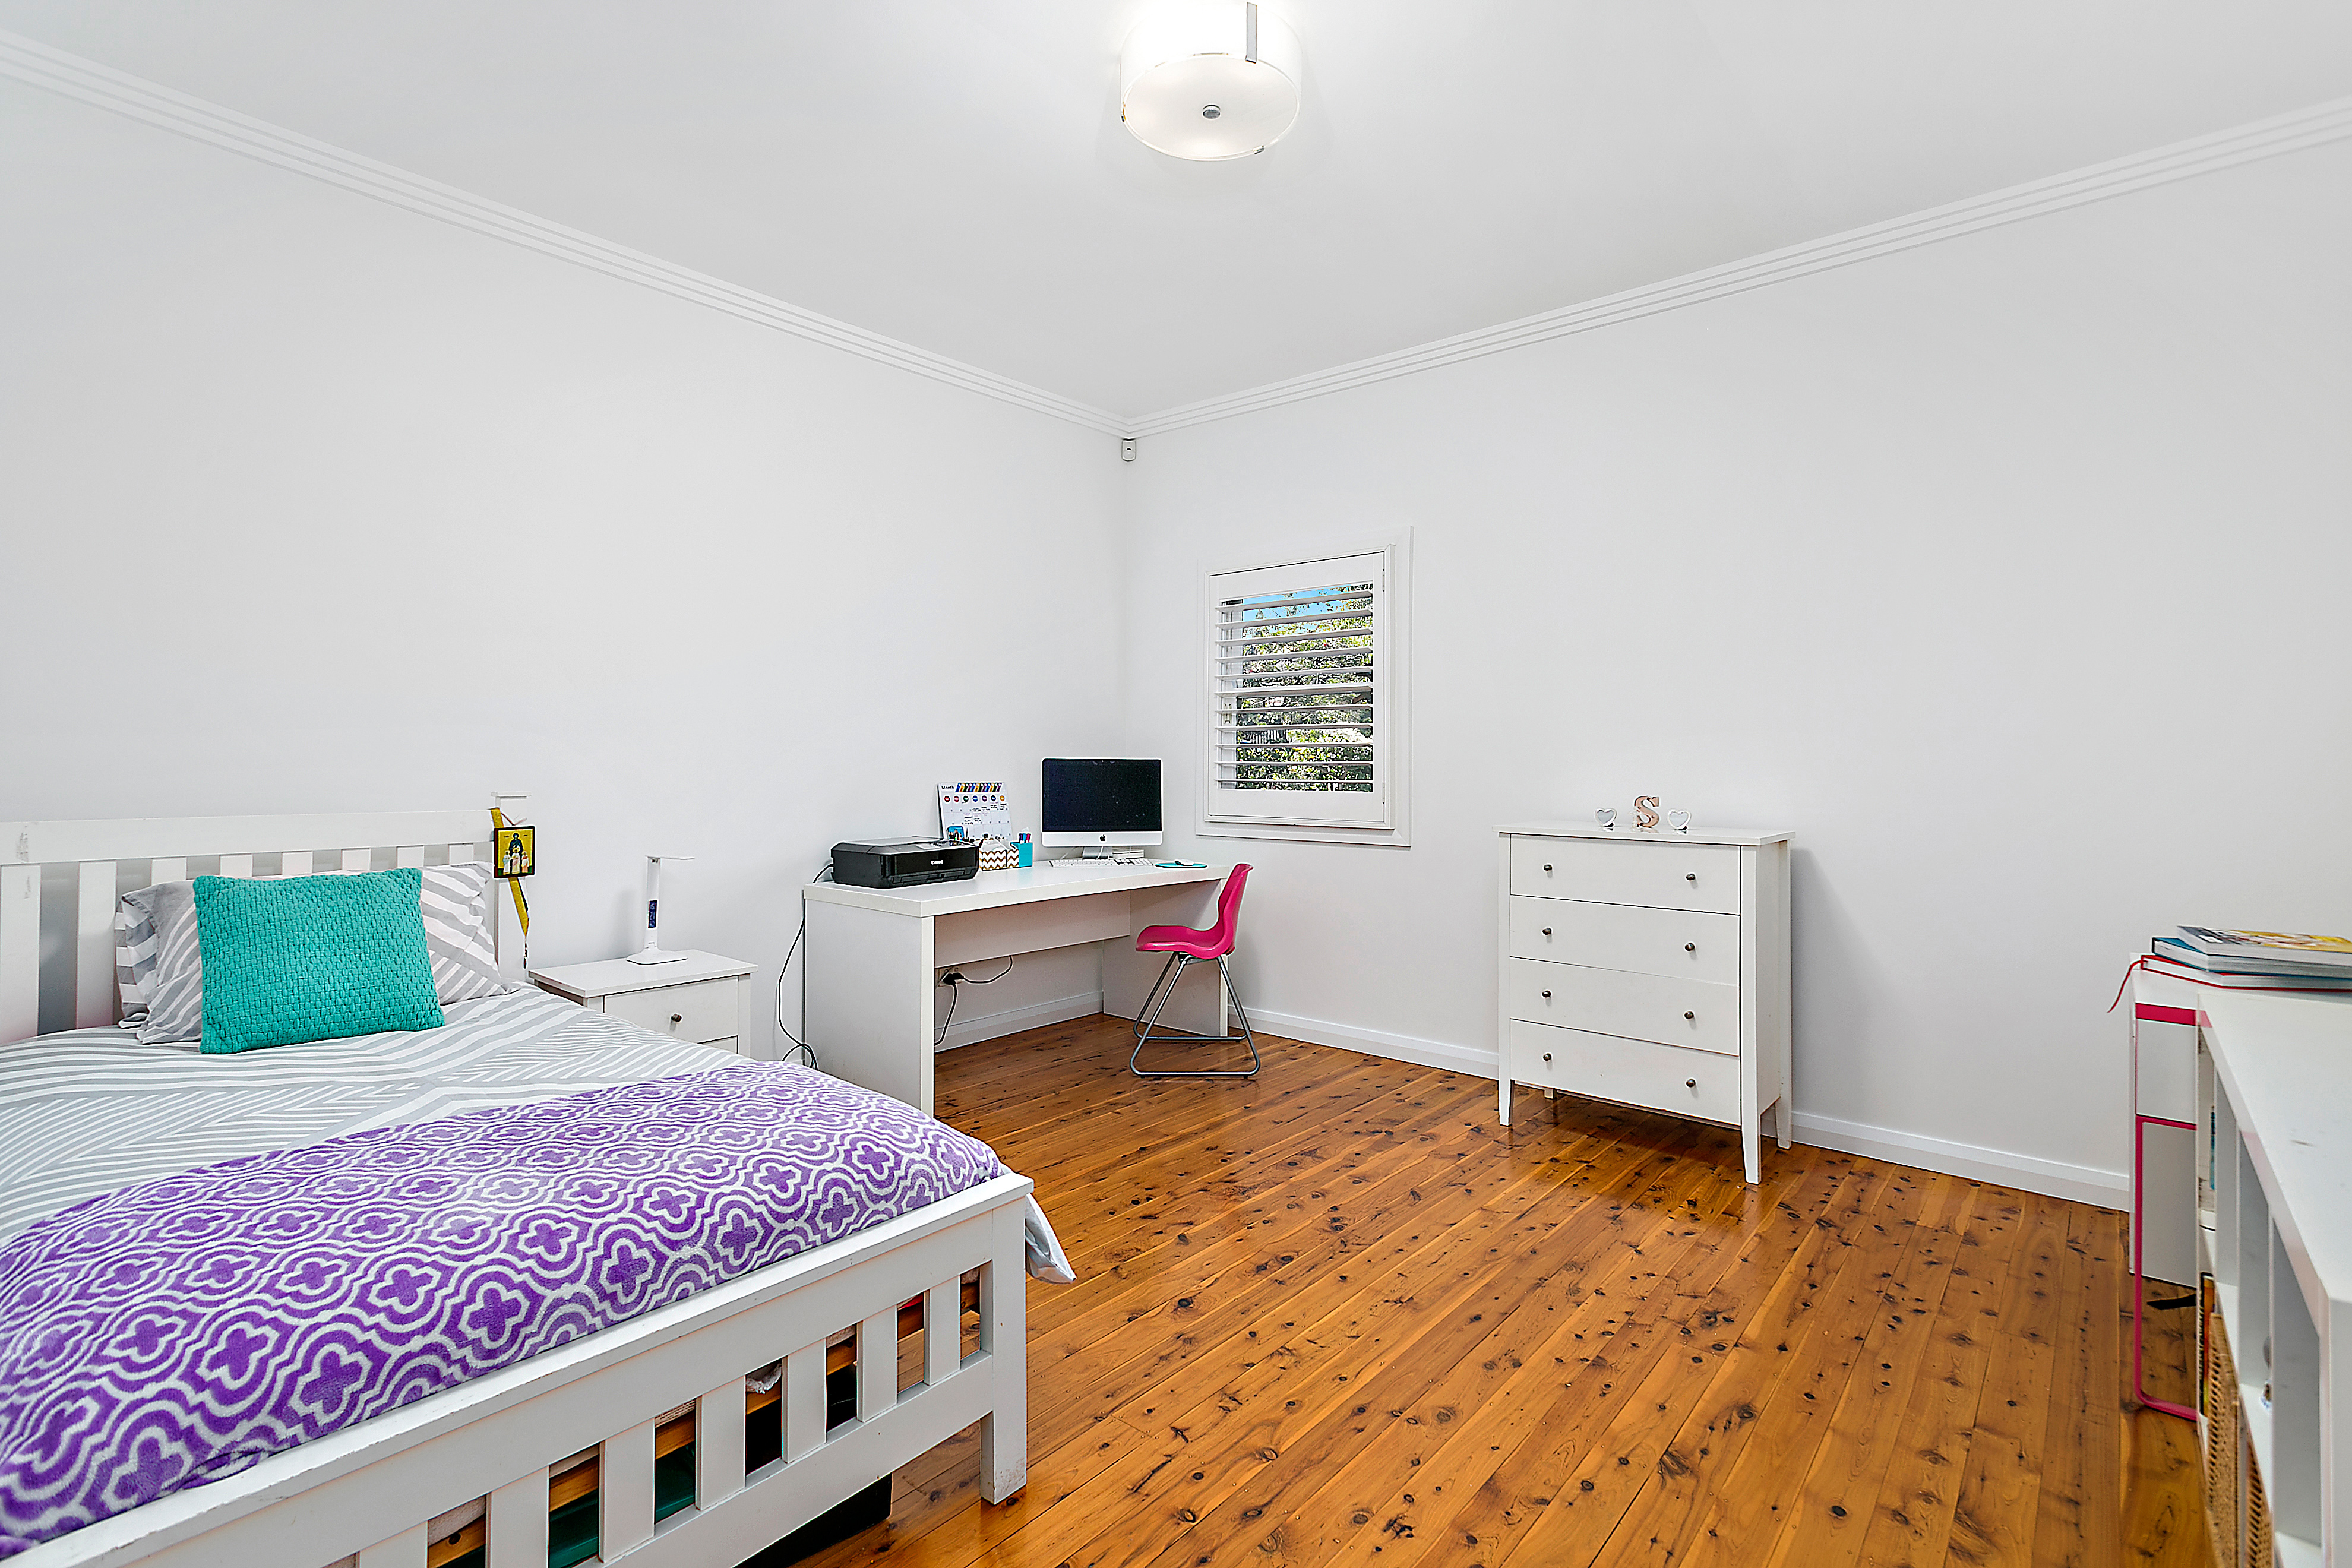 accommodation in blakehurst nsw.gov.au